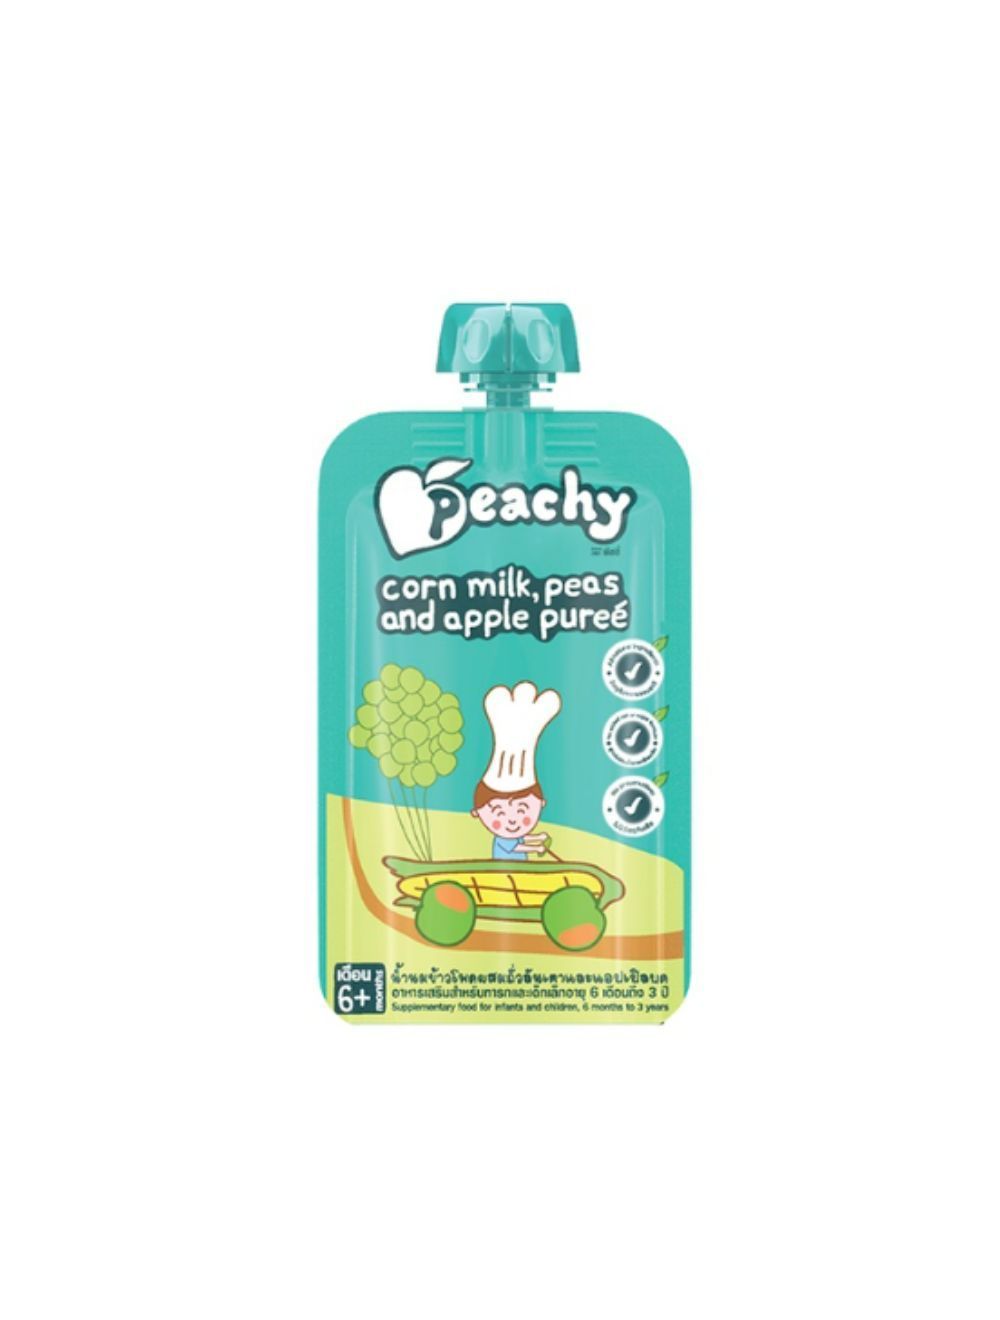 Peachy อาหารเสริมสำหรับเด็ก ผลิตจากวัตถุดิบธรรมชาติ อร่อย มีประโยชน์ ขนาด  110 กรัม (เหมาะสำหรับน้อง 6M+) ข้าวโพดถั่วลันเตาแอปเปิ้ล